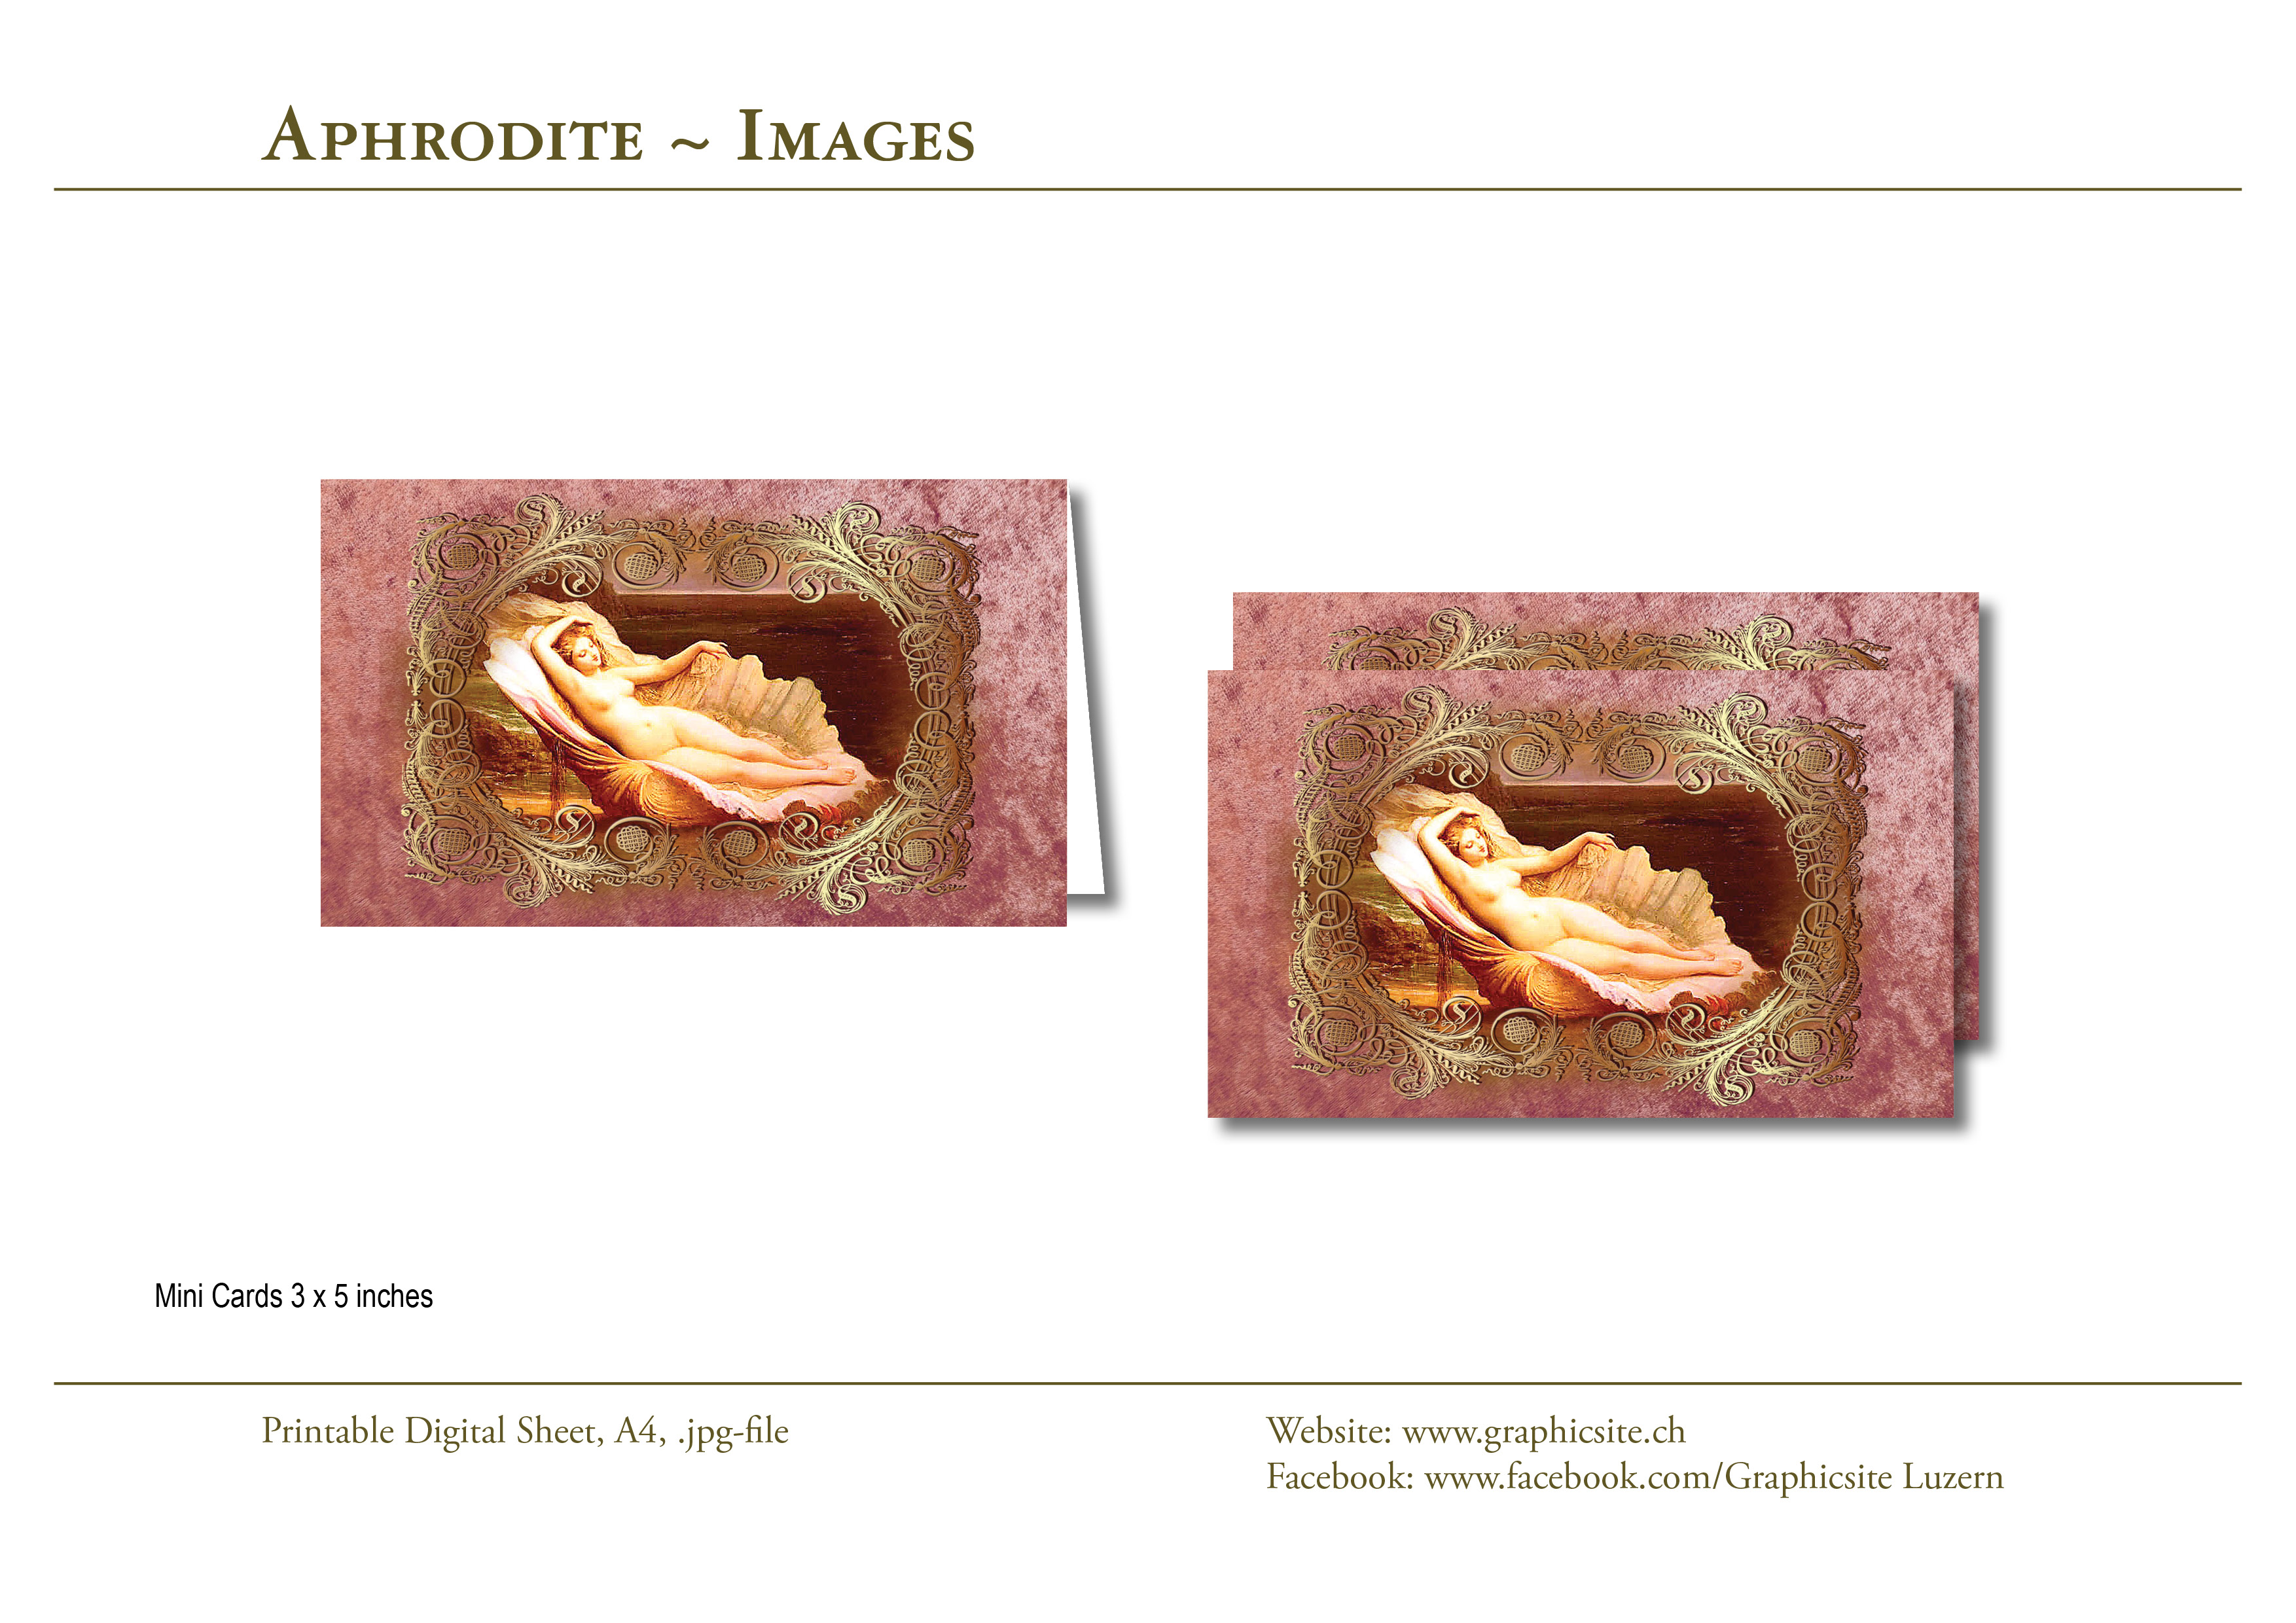 Karten selber drucken - 3 x 5 Bilder - Aphrodite, #goetting, #griechenland, #mythologie, #karten,  #basteln, #drucken,